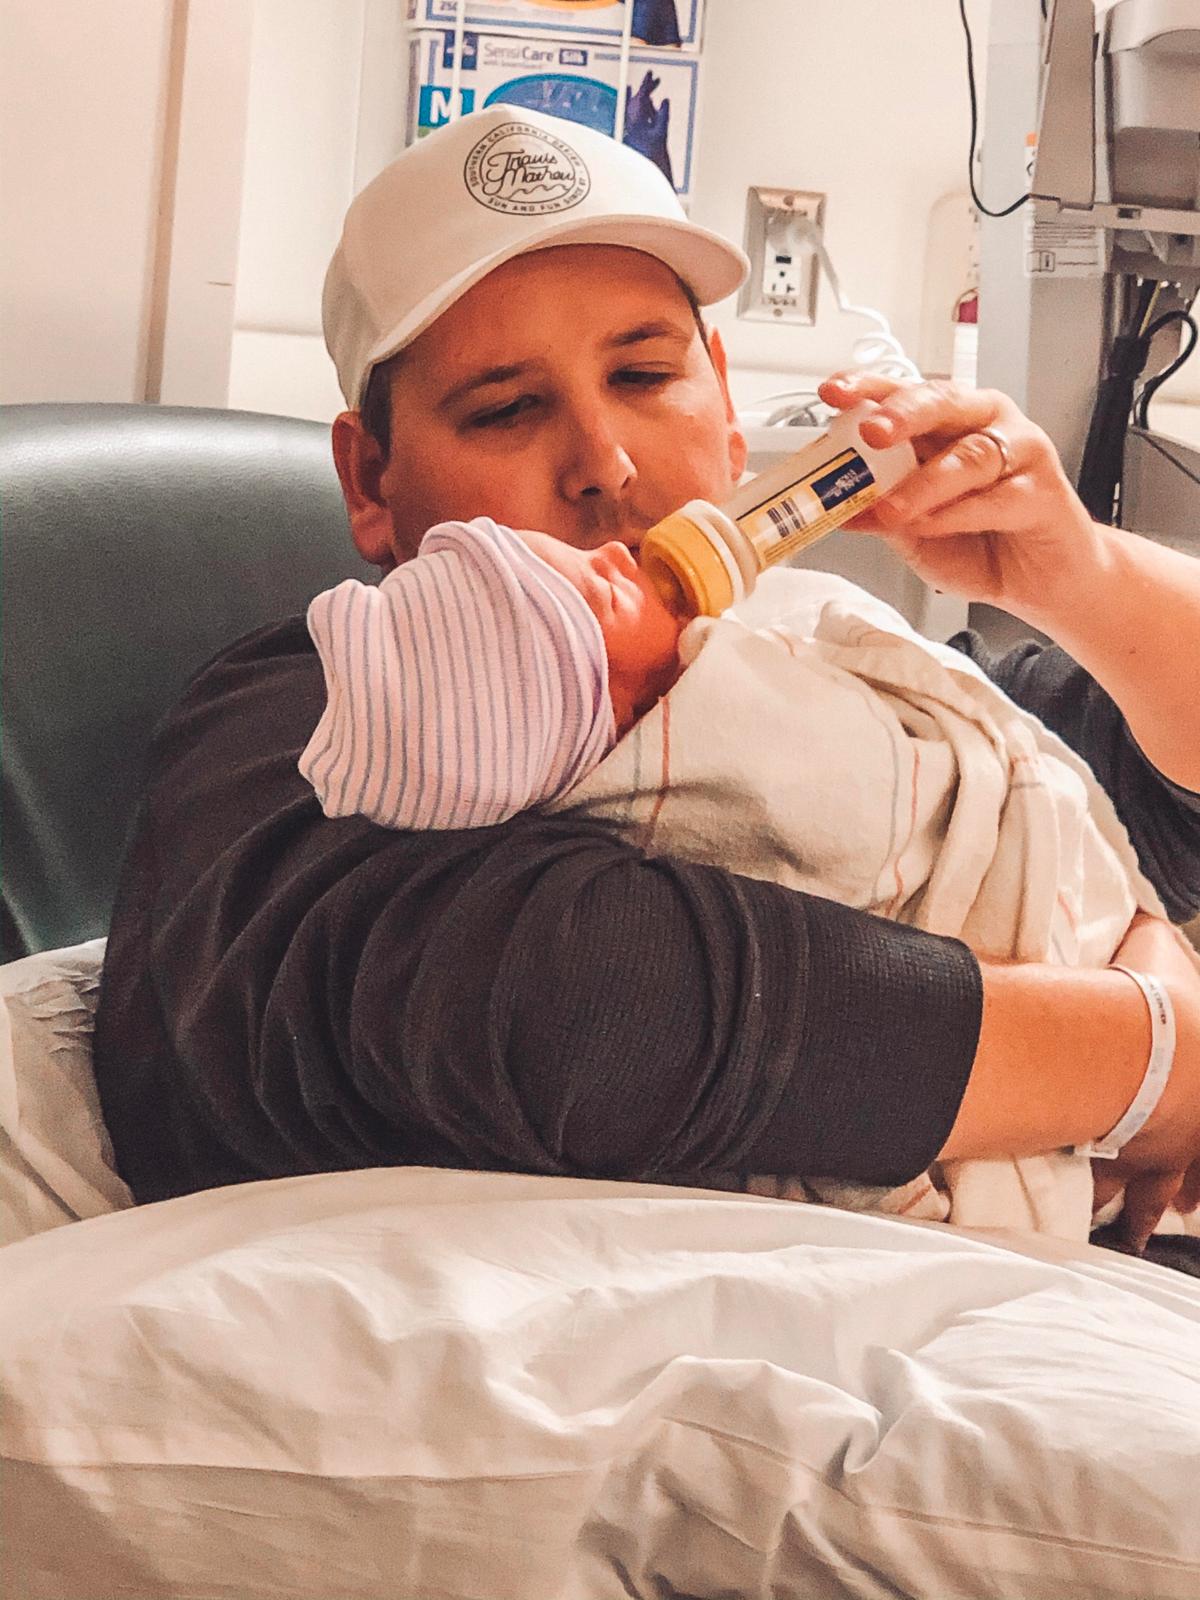 Matt Zieman with his baby son, Blake William. (Courtesy of <a href="https://www.facebook.com/jackie.latimer3">Jackie Zieman</a>)